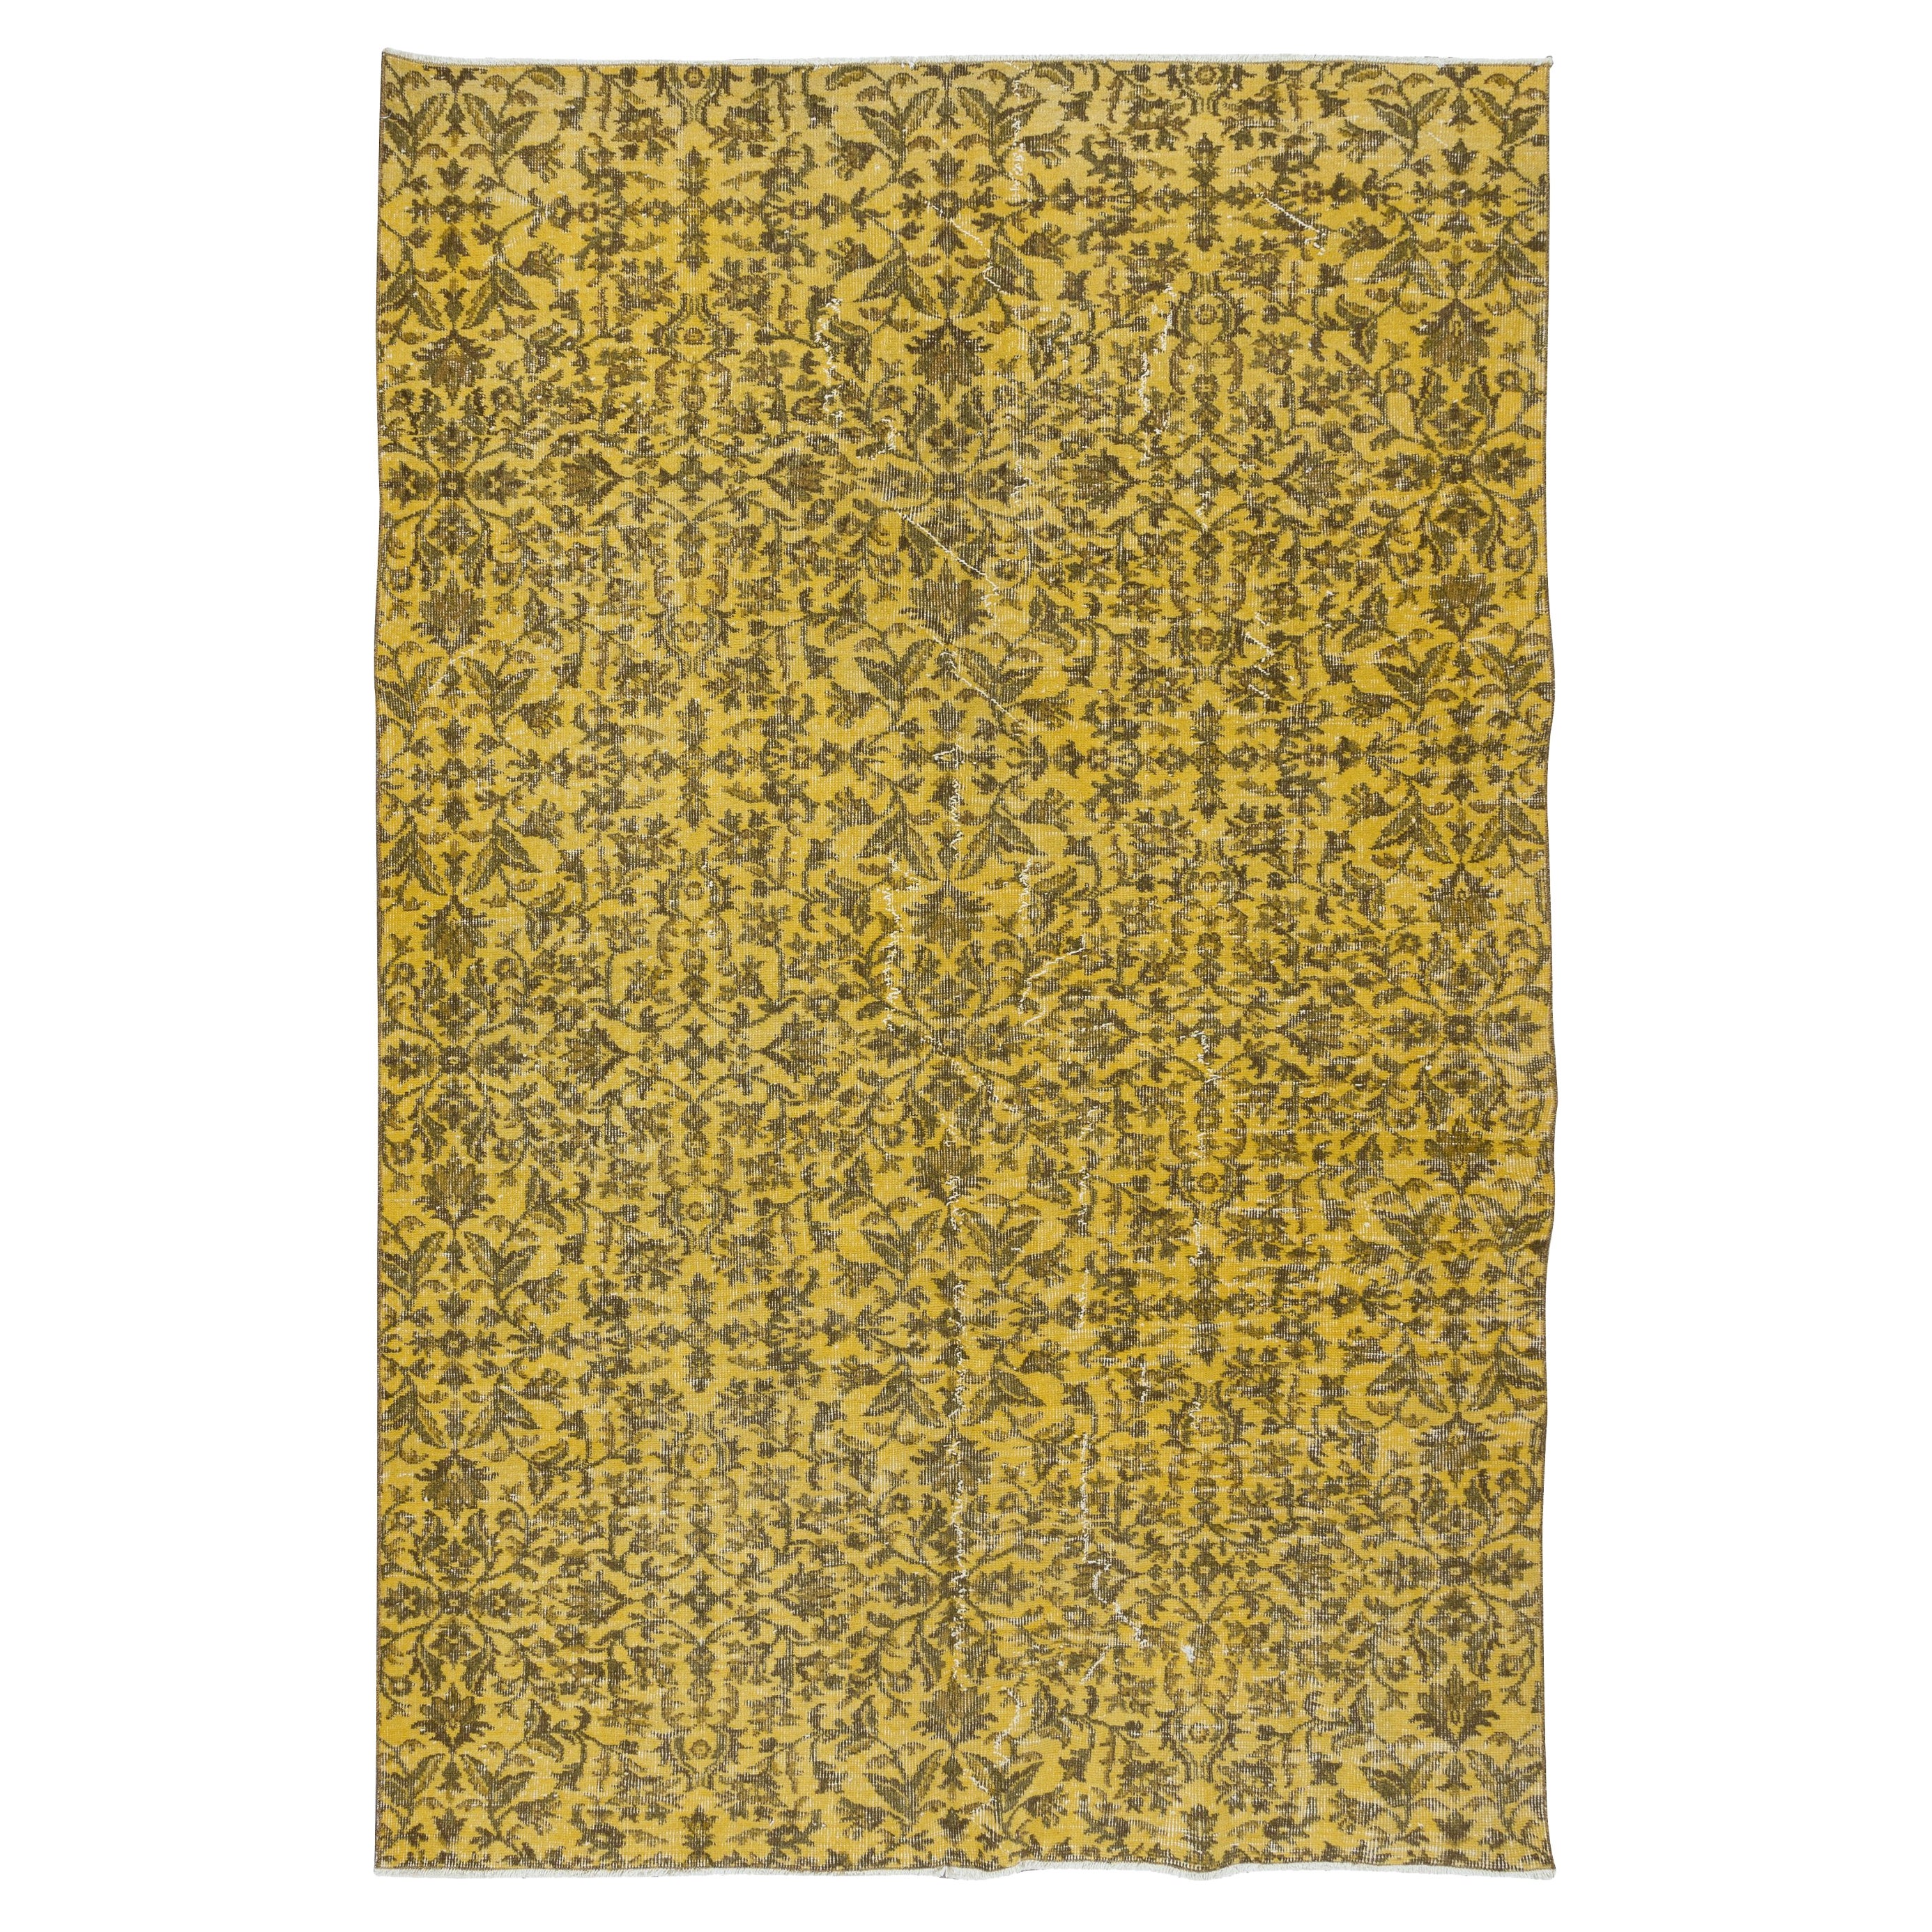 6x9 Ft Moderner handgefertigter türkischer Teppich mit braunen Blumen und gelbem Hintergrund